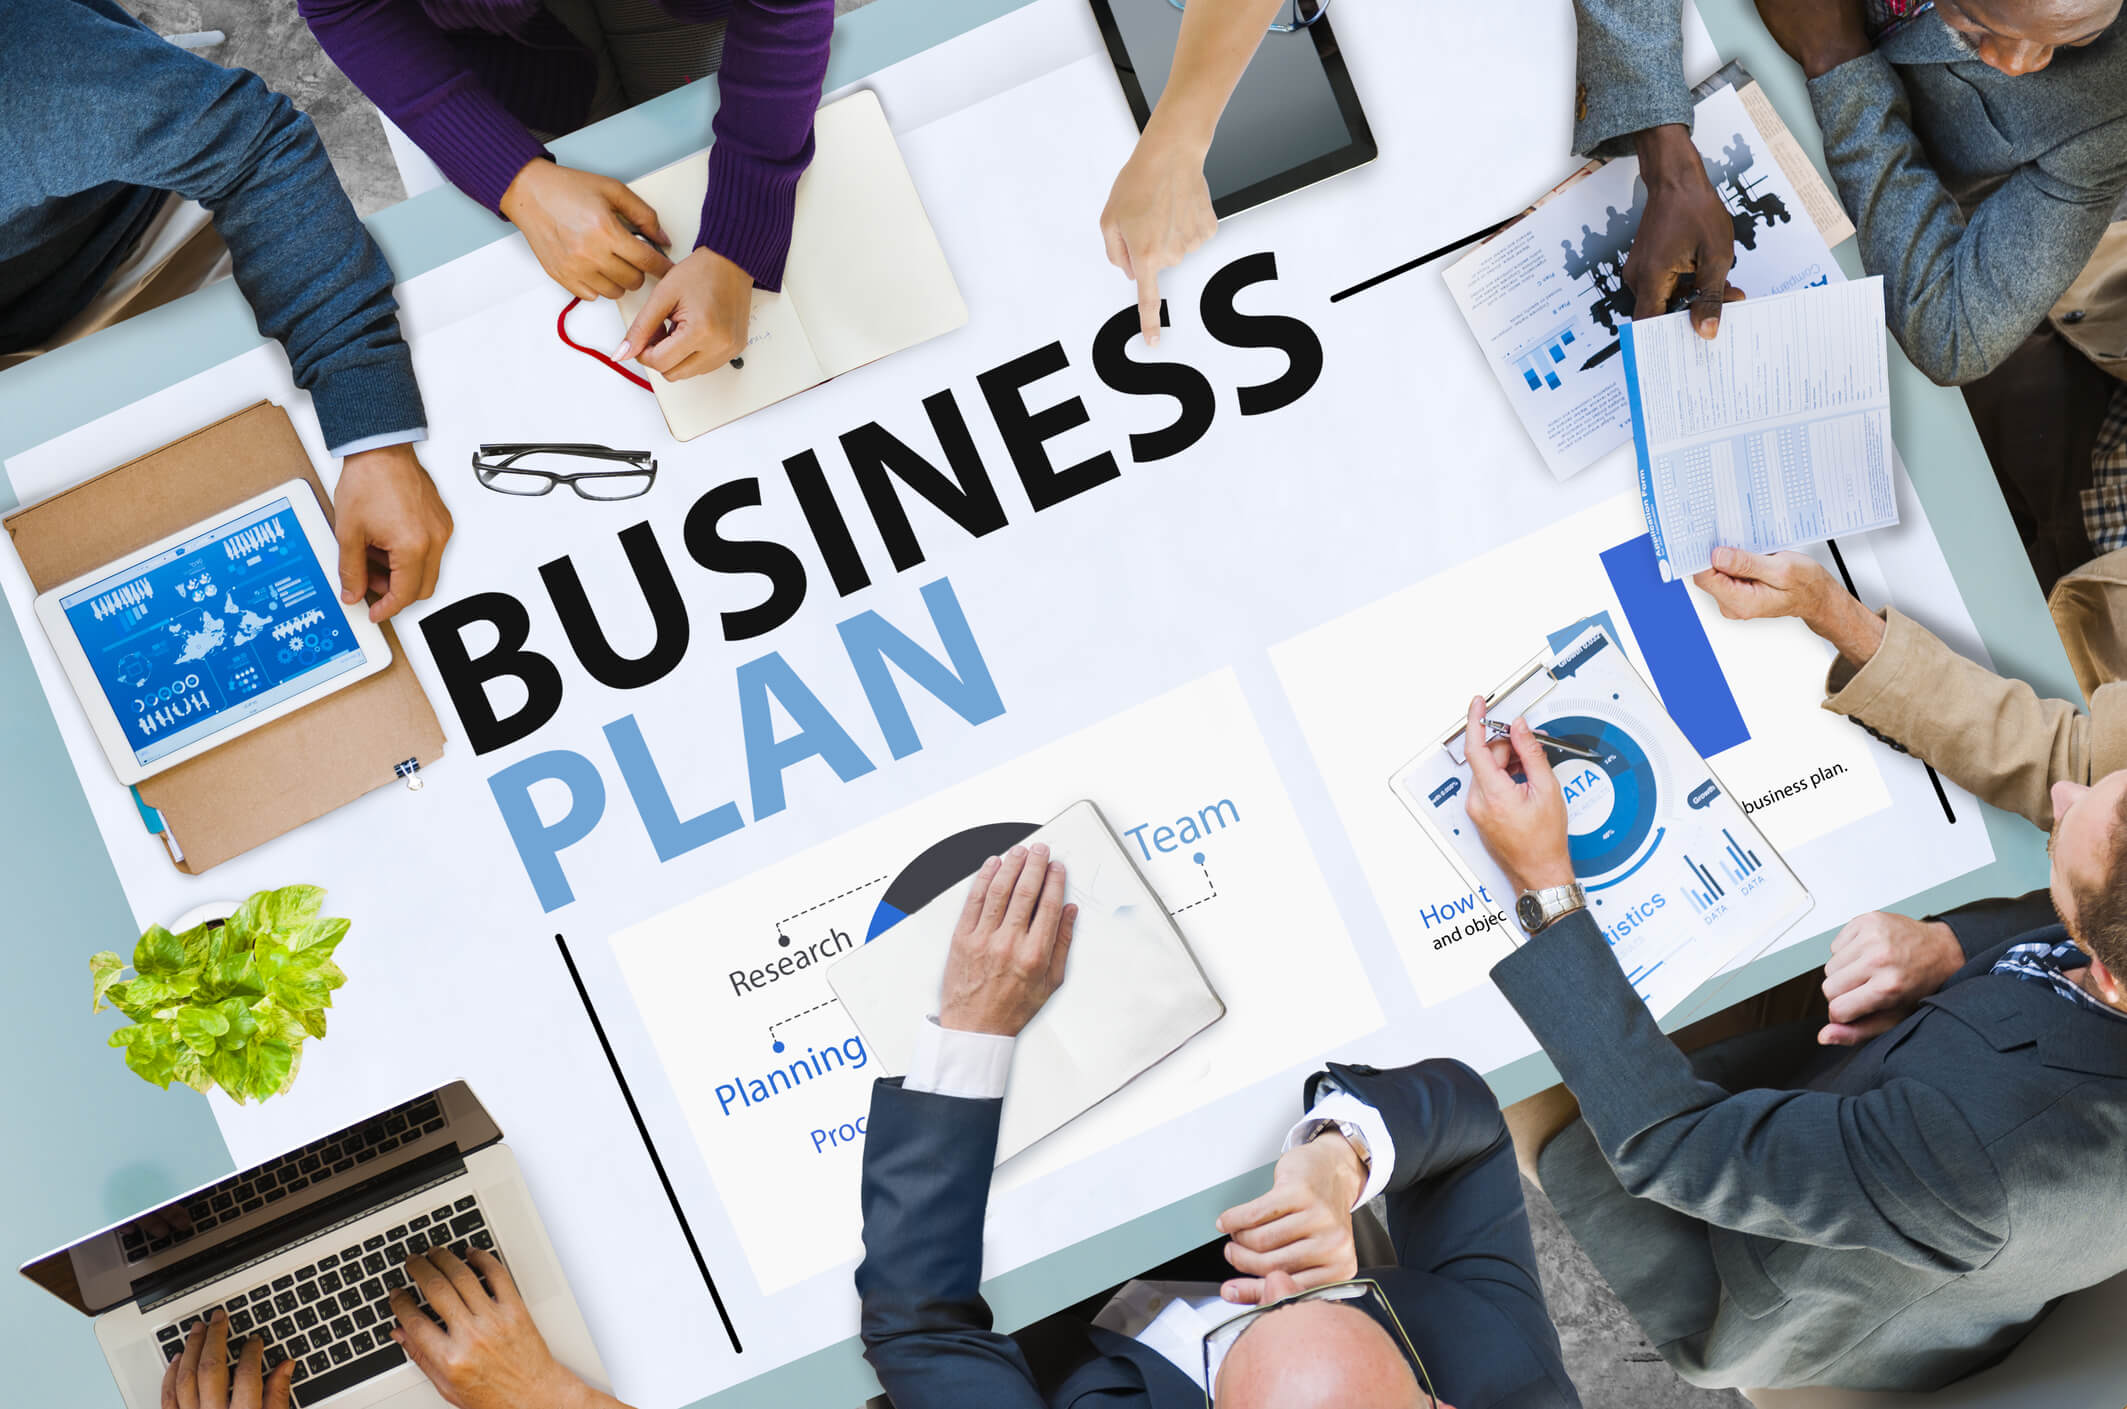 Разработка бизнес-плана